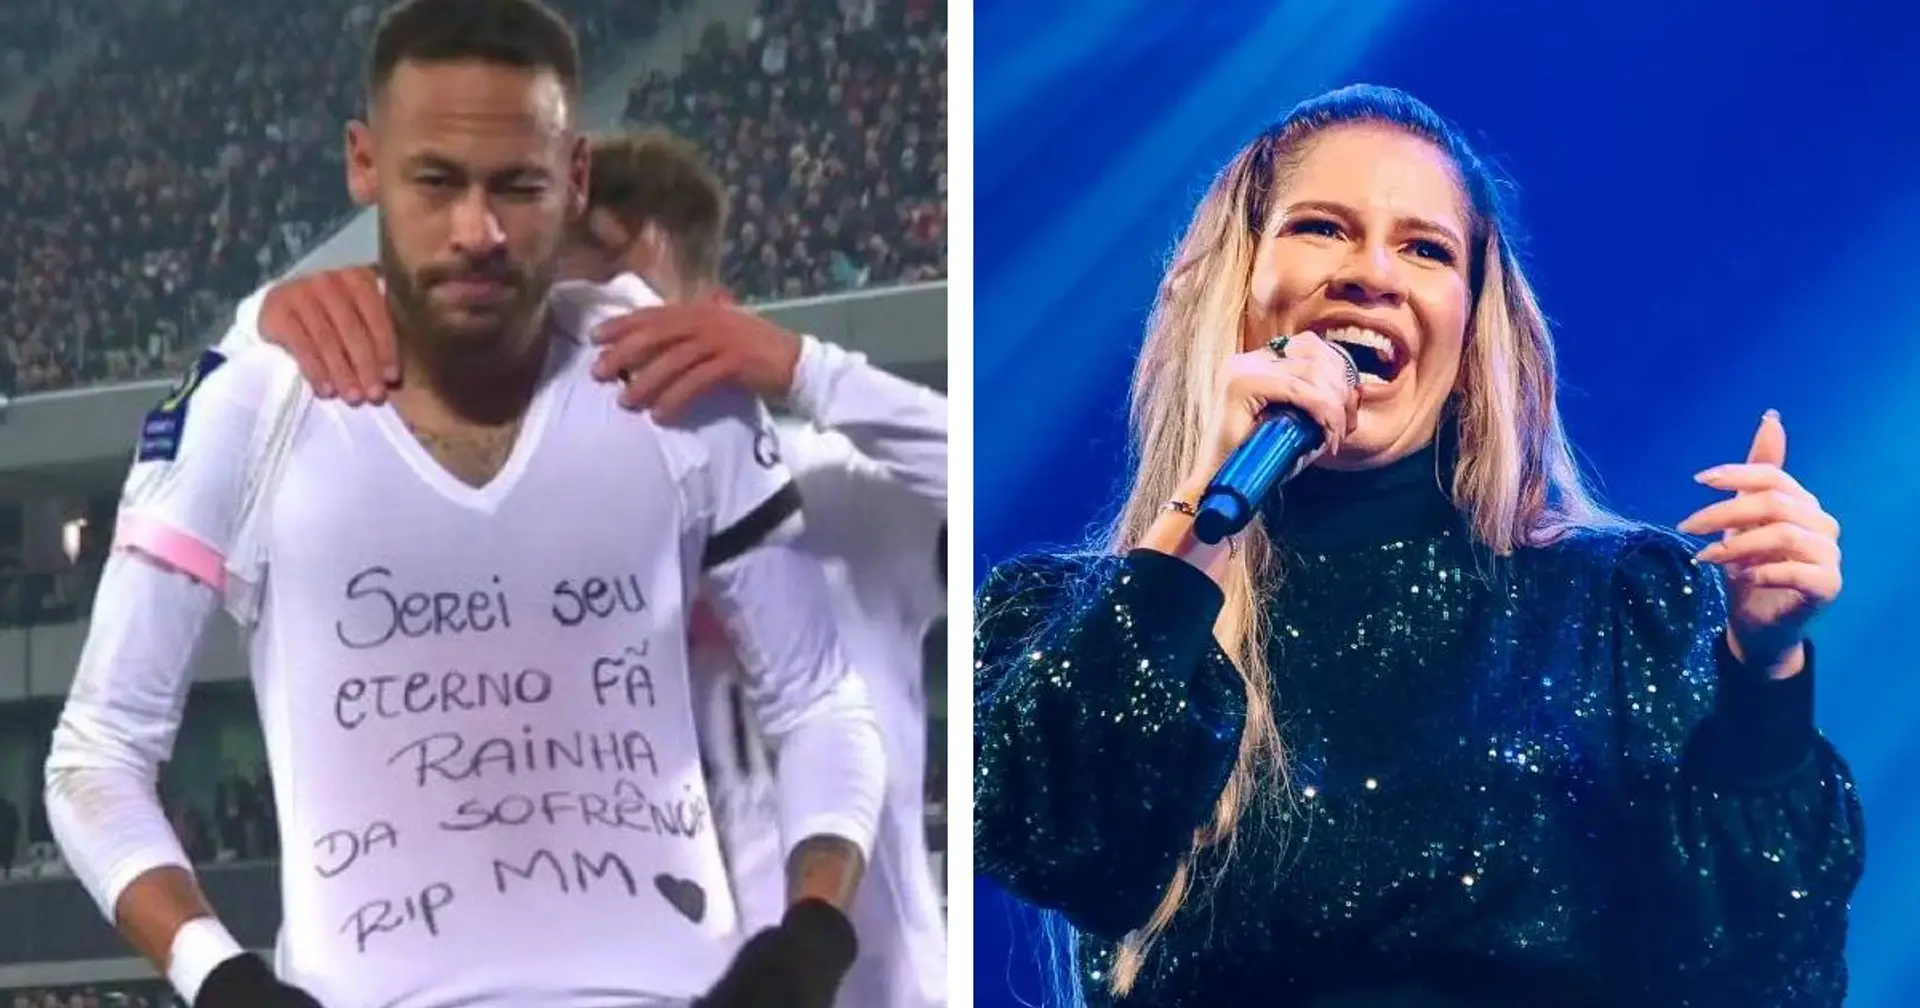 Neymar dédicace son but à son amie chanteuse Marilia Mendoza décédée tragiquement dans un accident d'avion